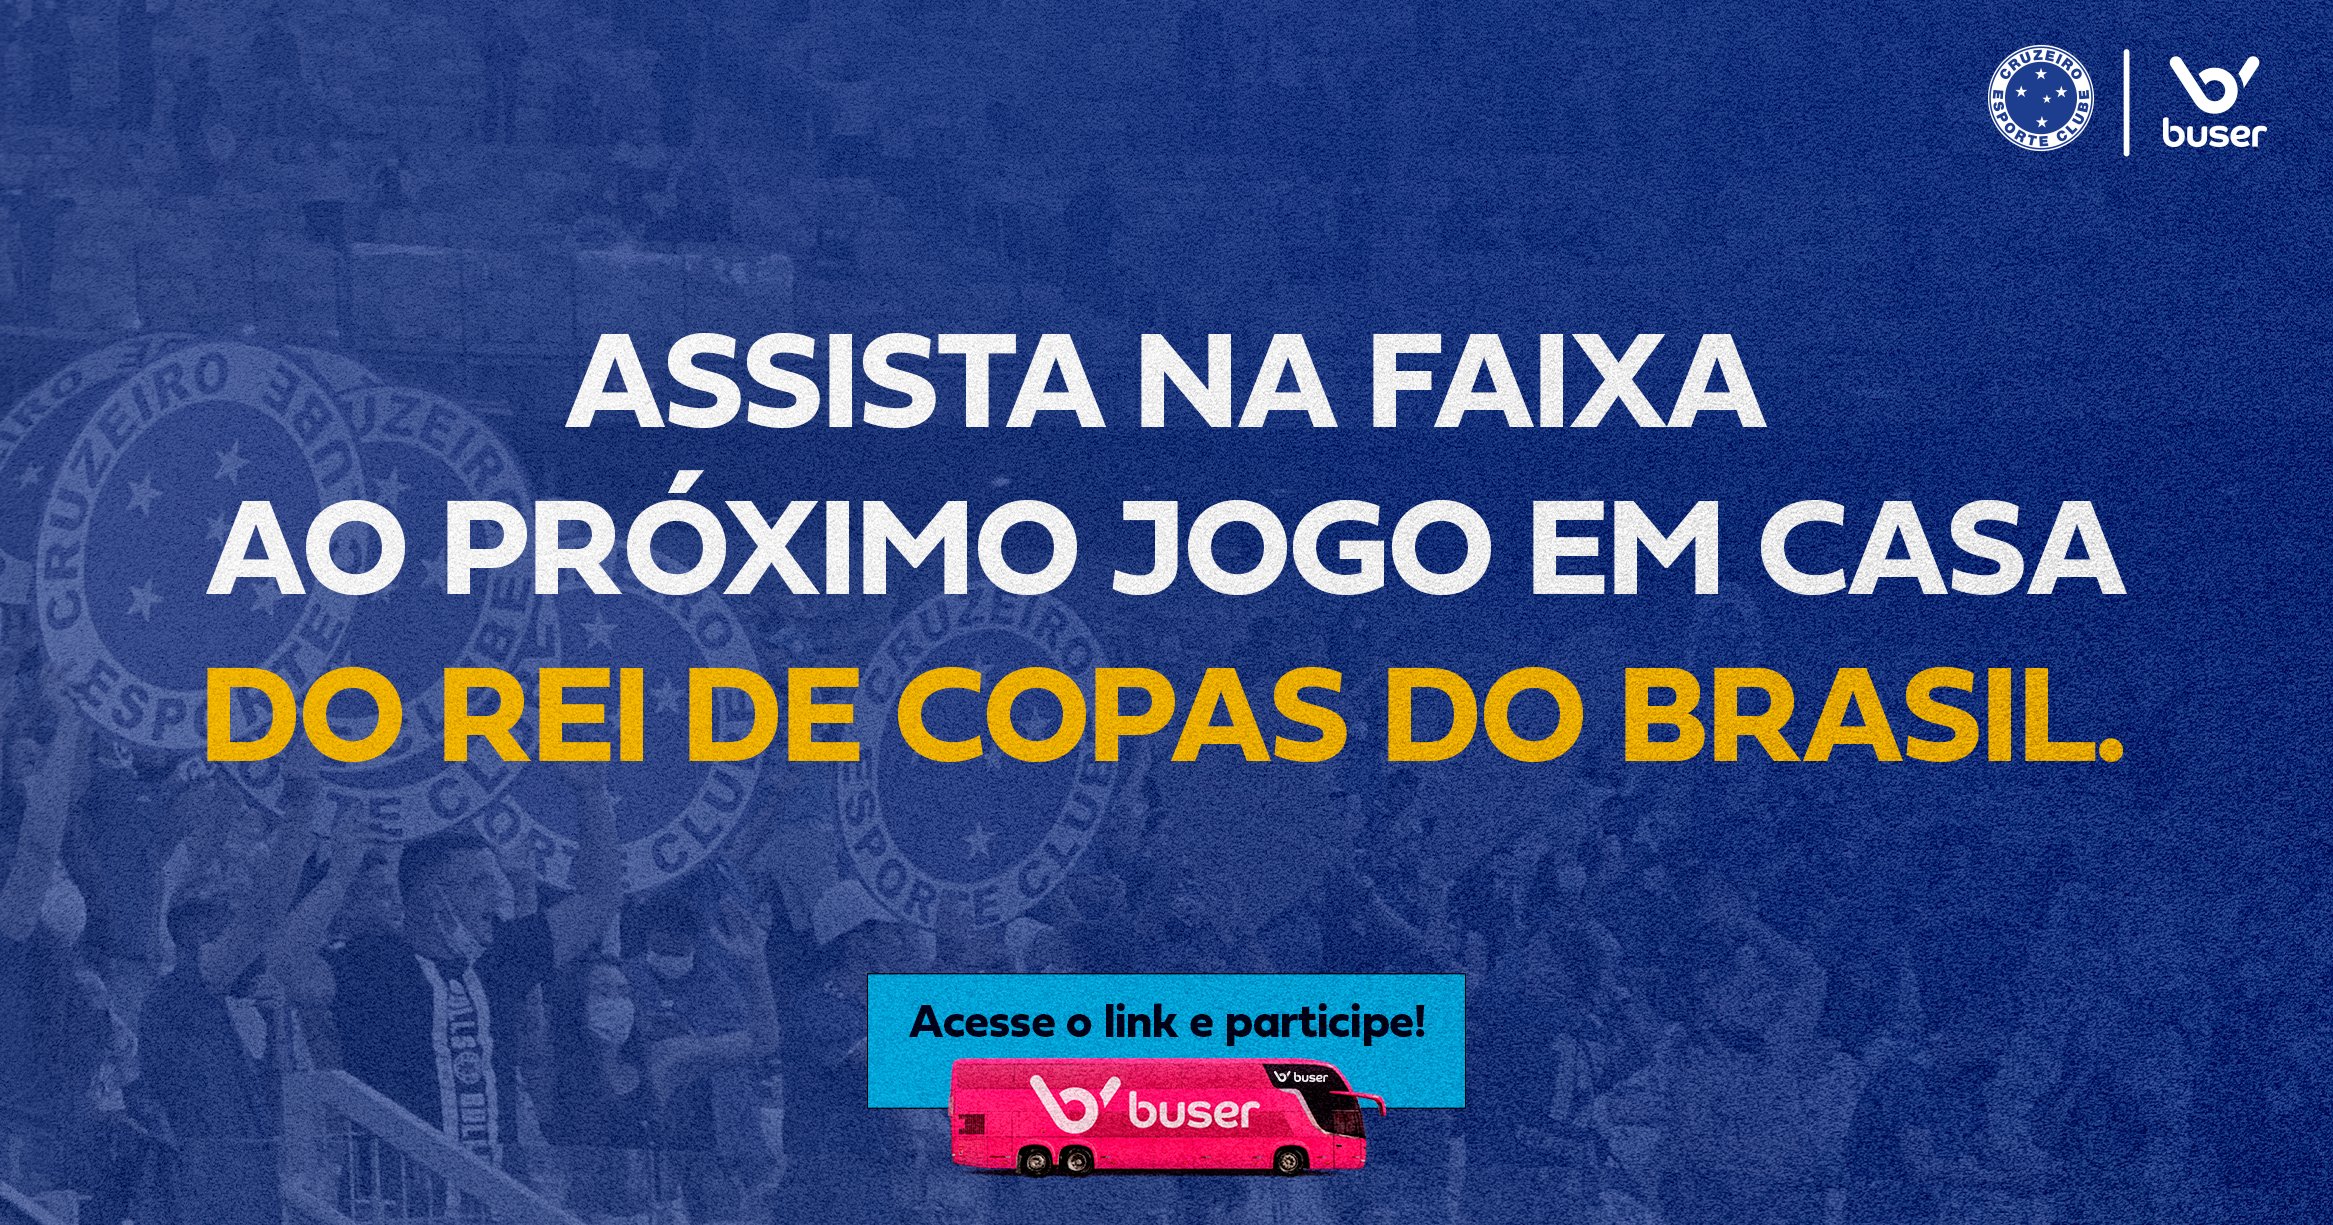 O que o Cruzeiro poderá esperar do jogo no Rio? Especialistas do Flu da equipe pensam! Entenda - Fonte/Twitter